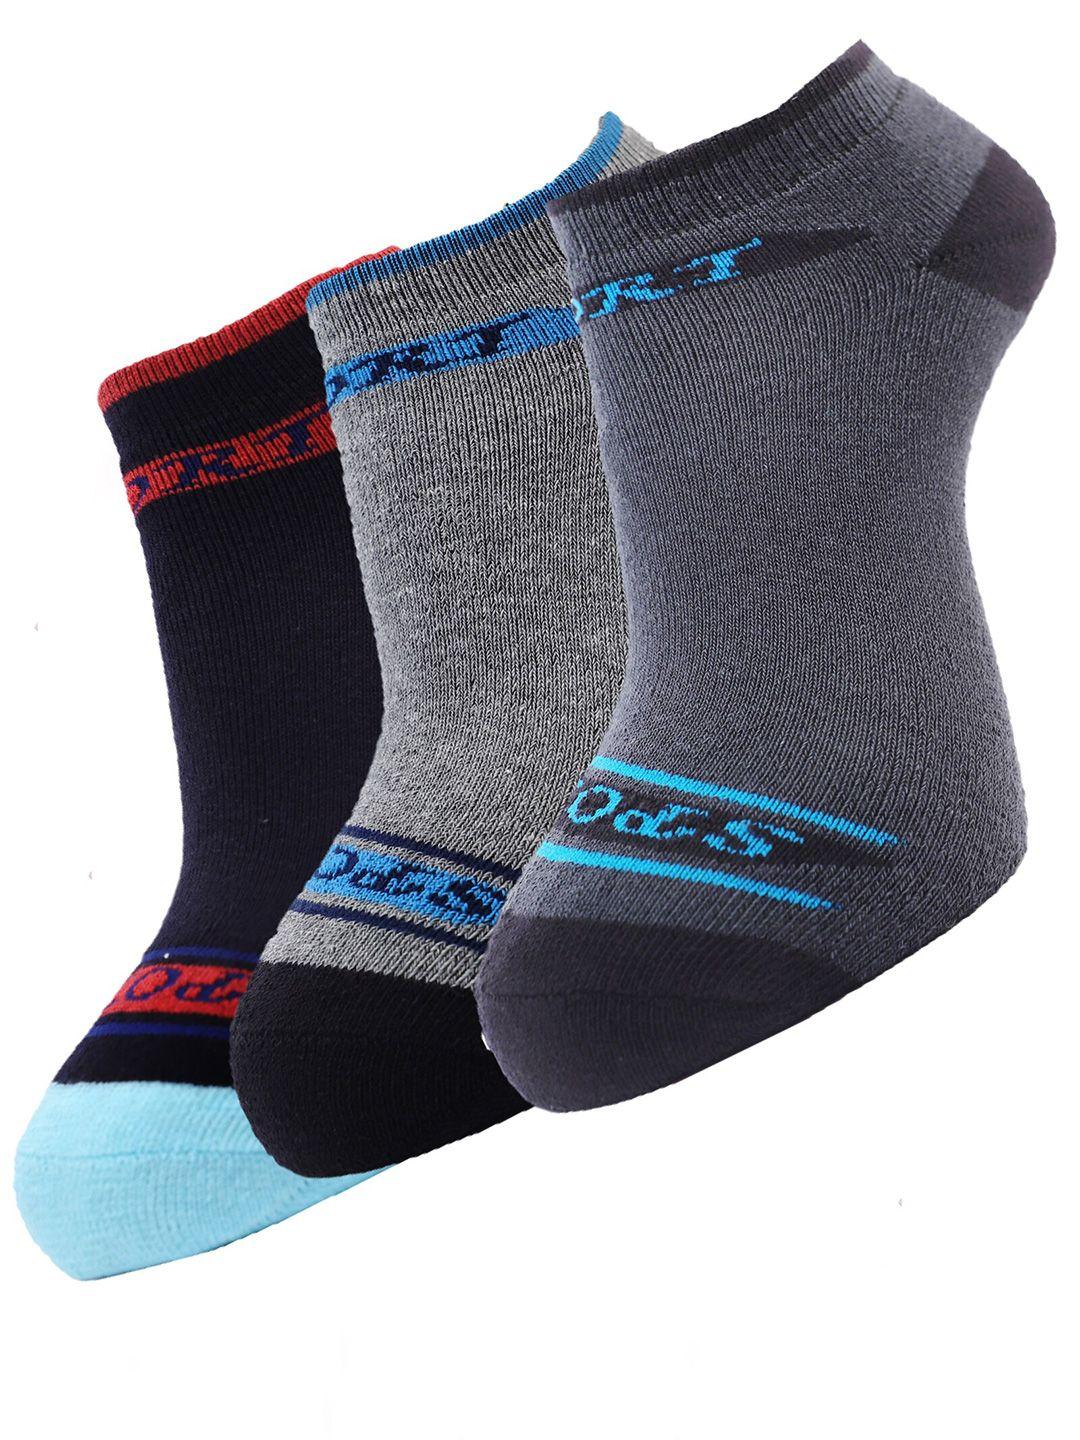 dollar socks men pack of 3 assorted cotton ankle-length socks